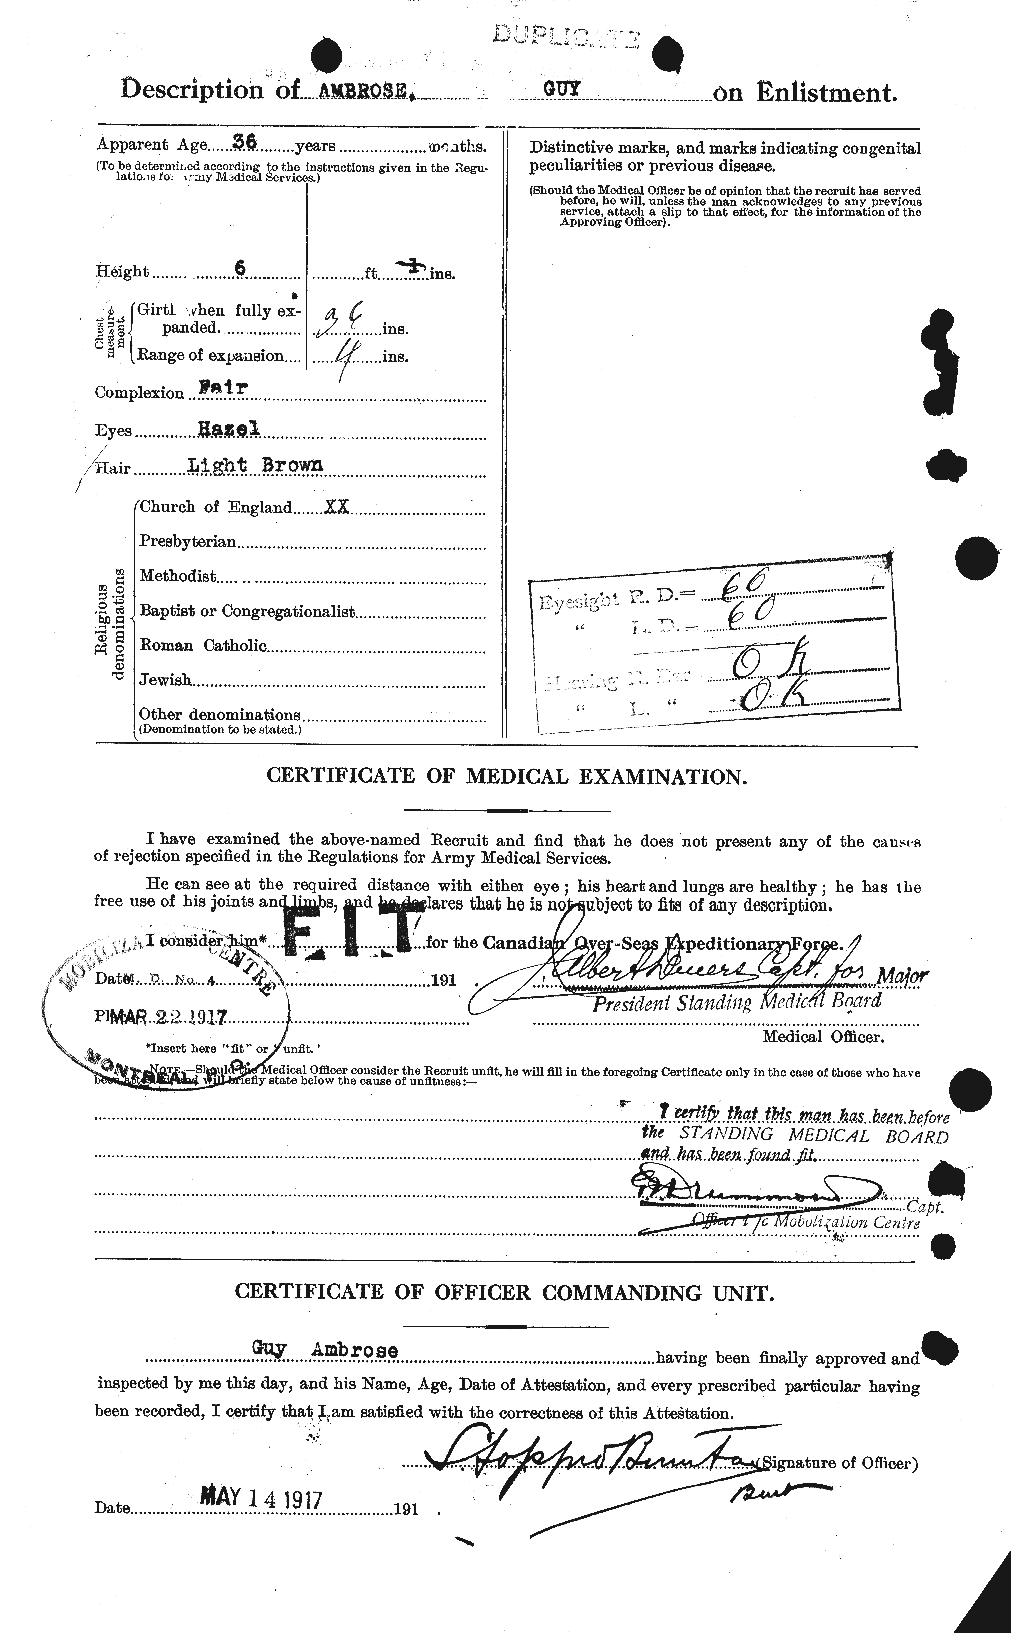 Dossiers du Personnel de la Première Guerre mondiale - CEC 208935b